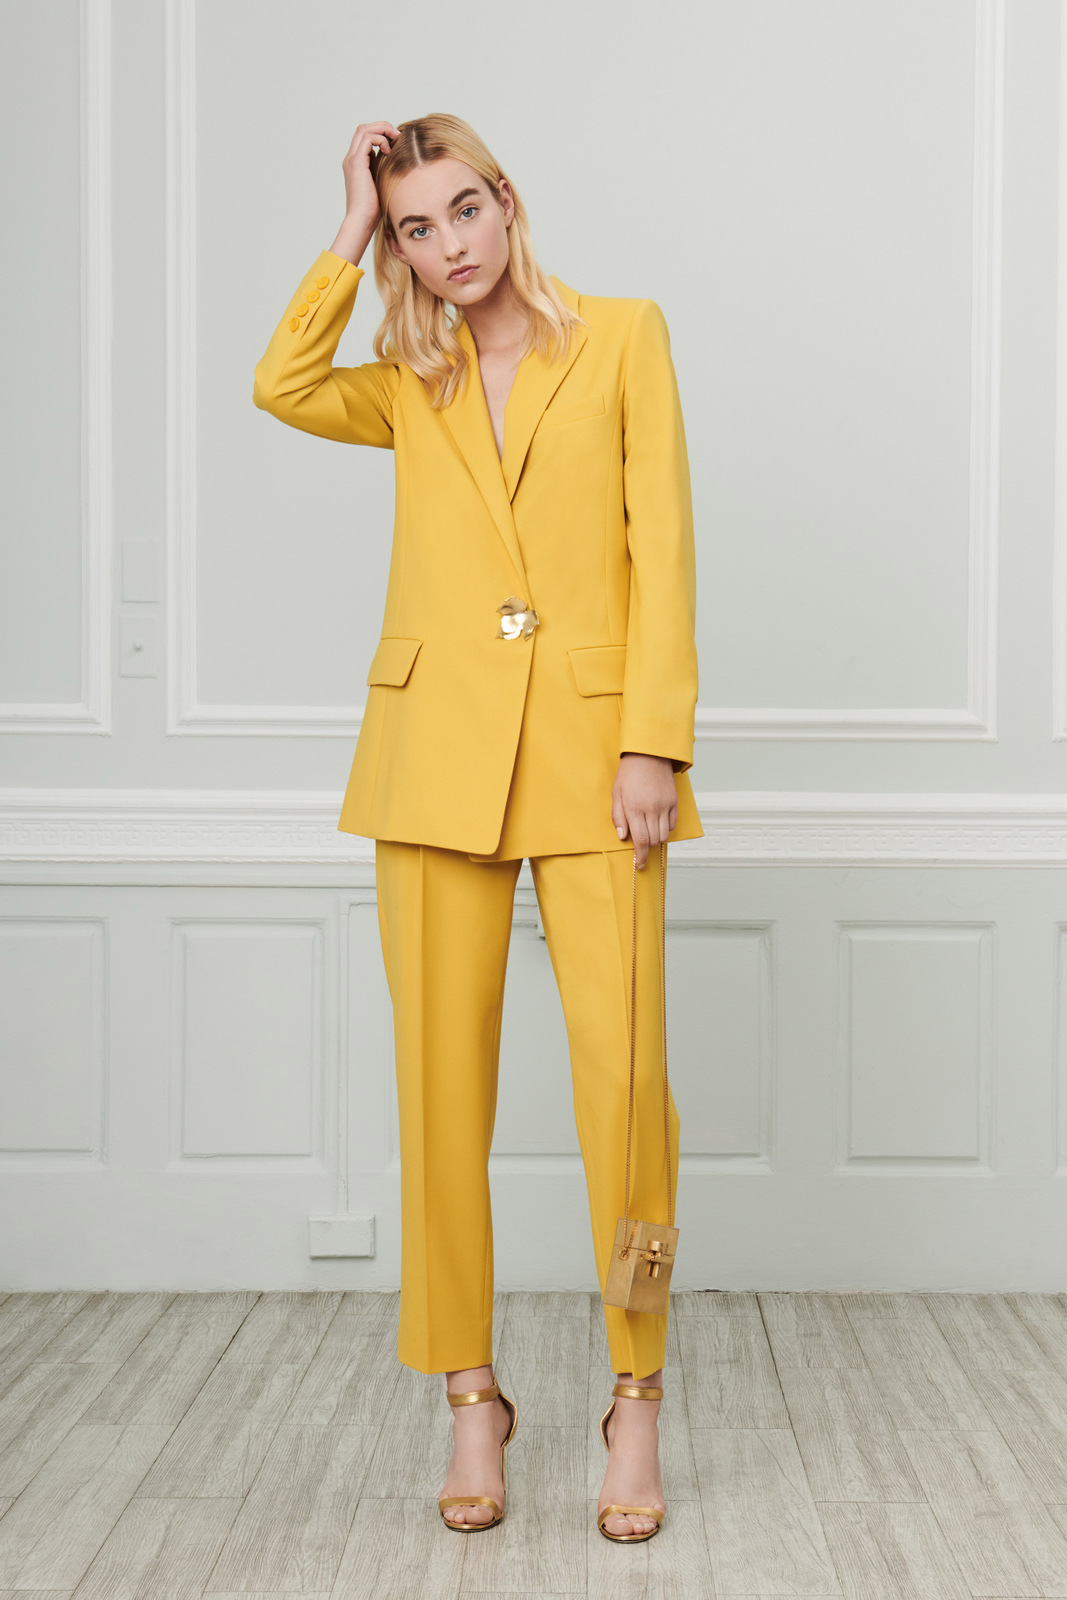 Trend Alert: Monochromatic Suits 2019